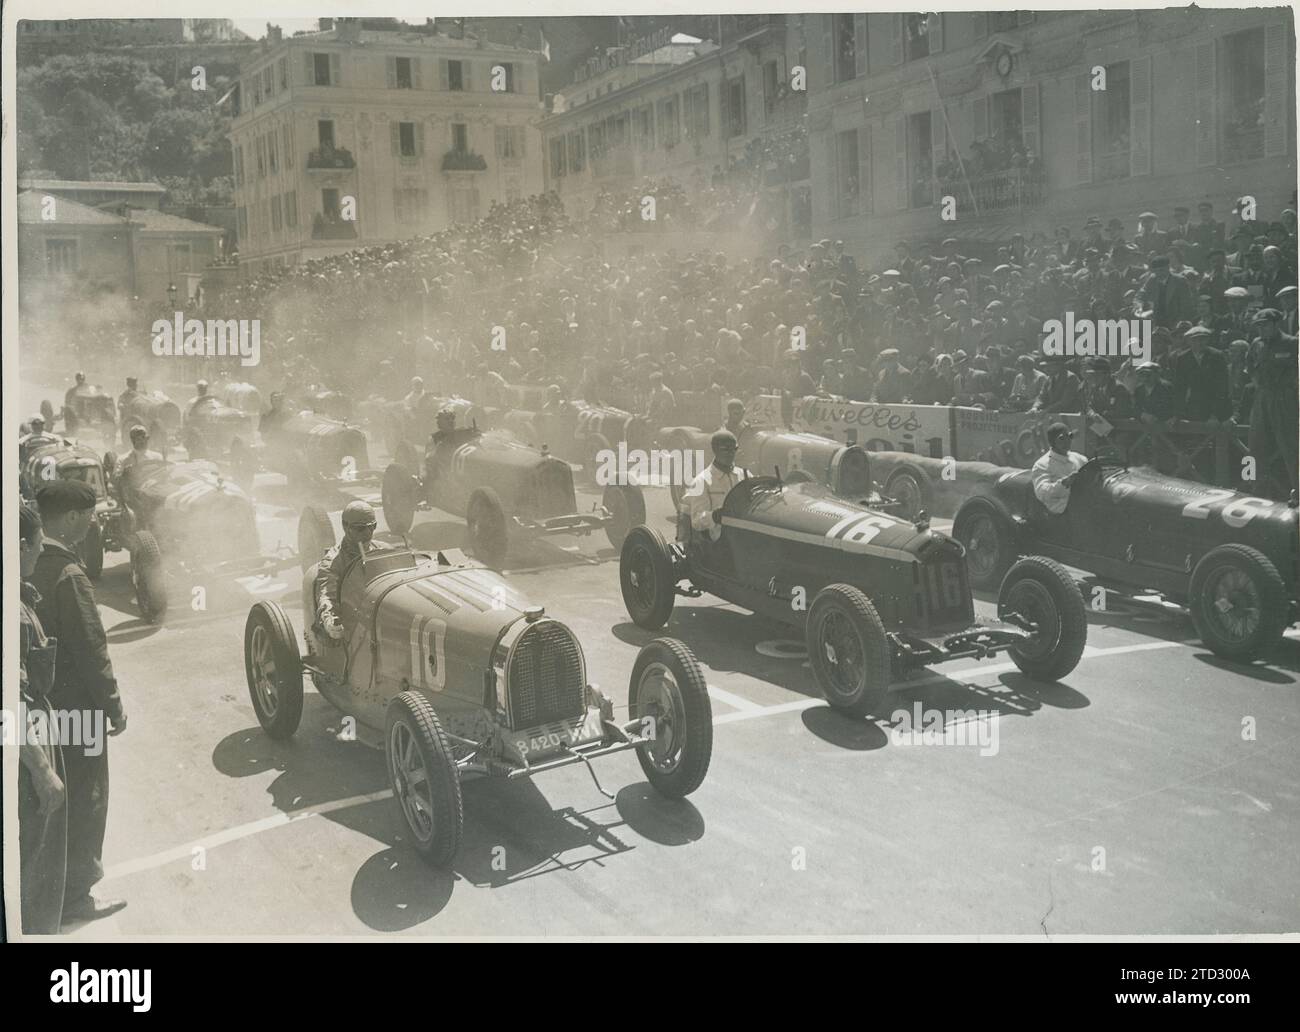 Monaco, 23.04.1933. Großer Preis Von Monaco. Moment des Starts mit den Fahrern, von links nach rechts, Achille Varzi, Louis Chiron und Baconin Borzacchini. Quelle: Album/Archivo ABC Stockfoto